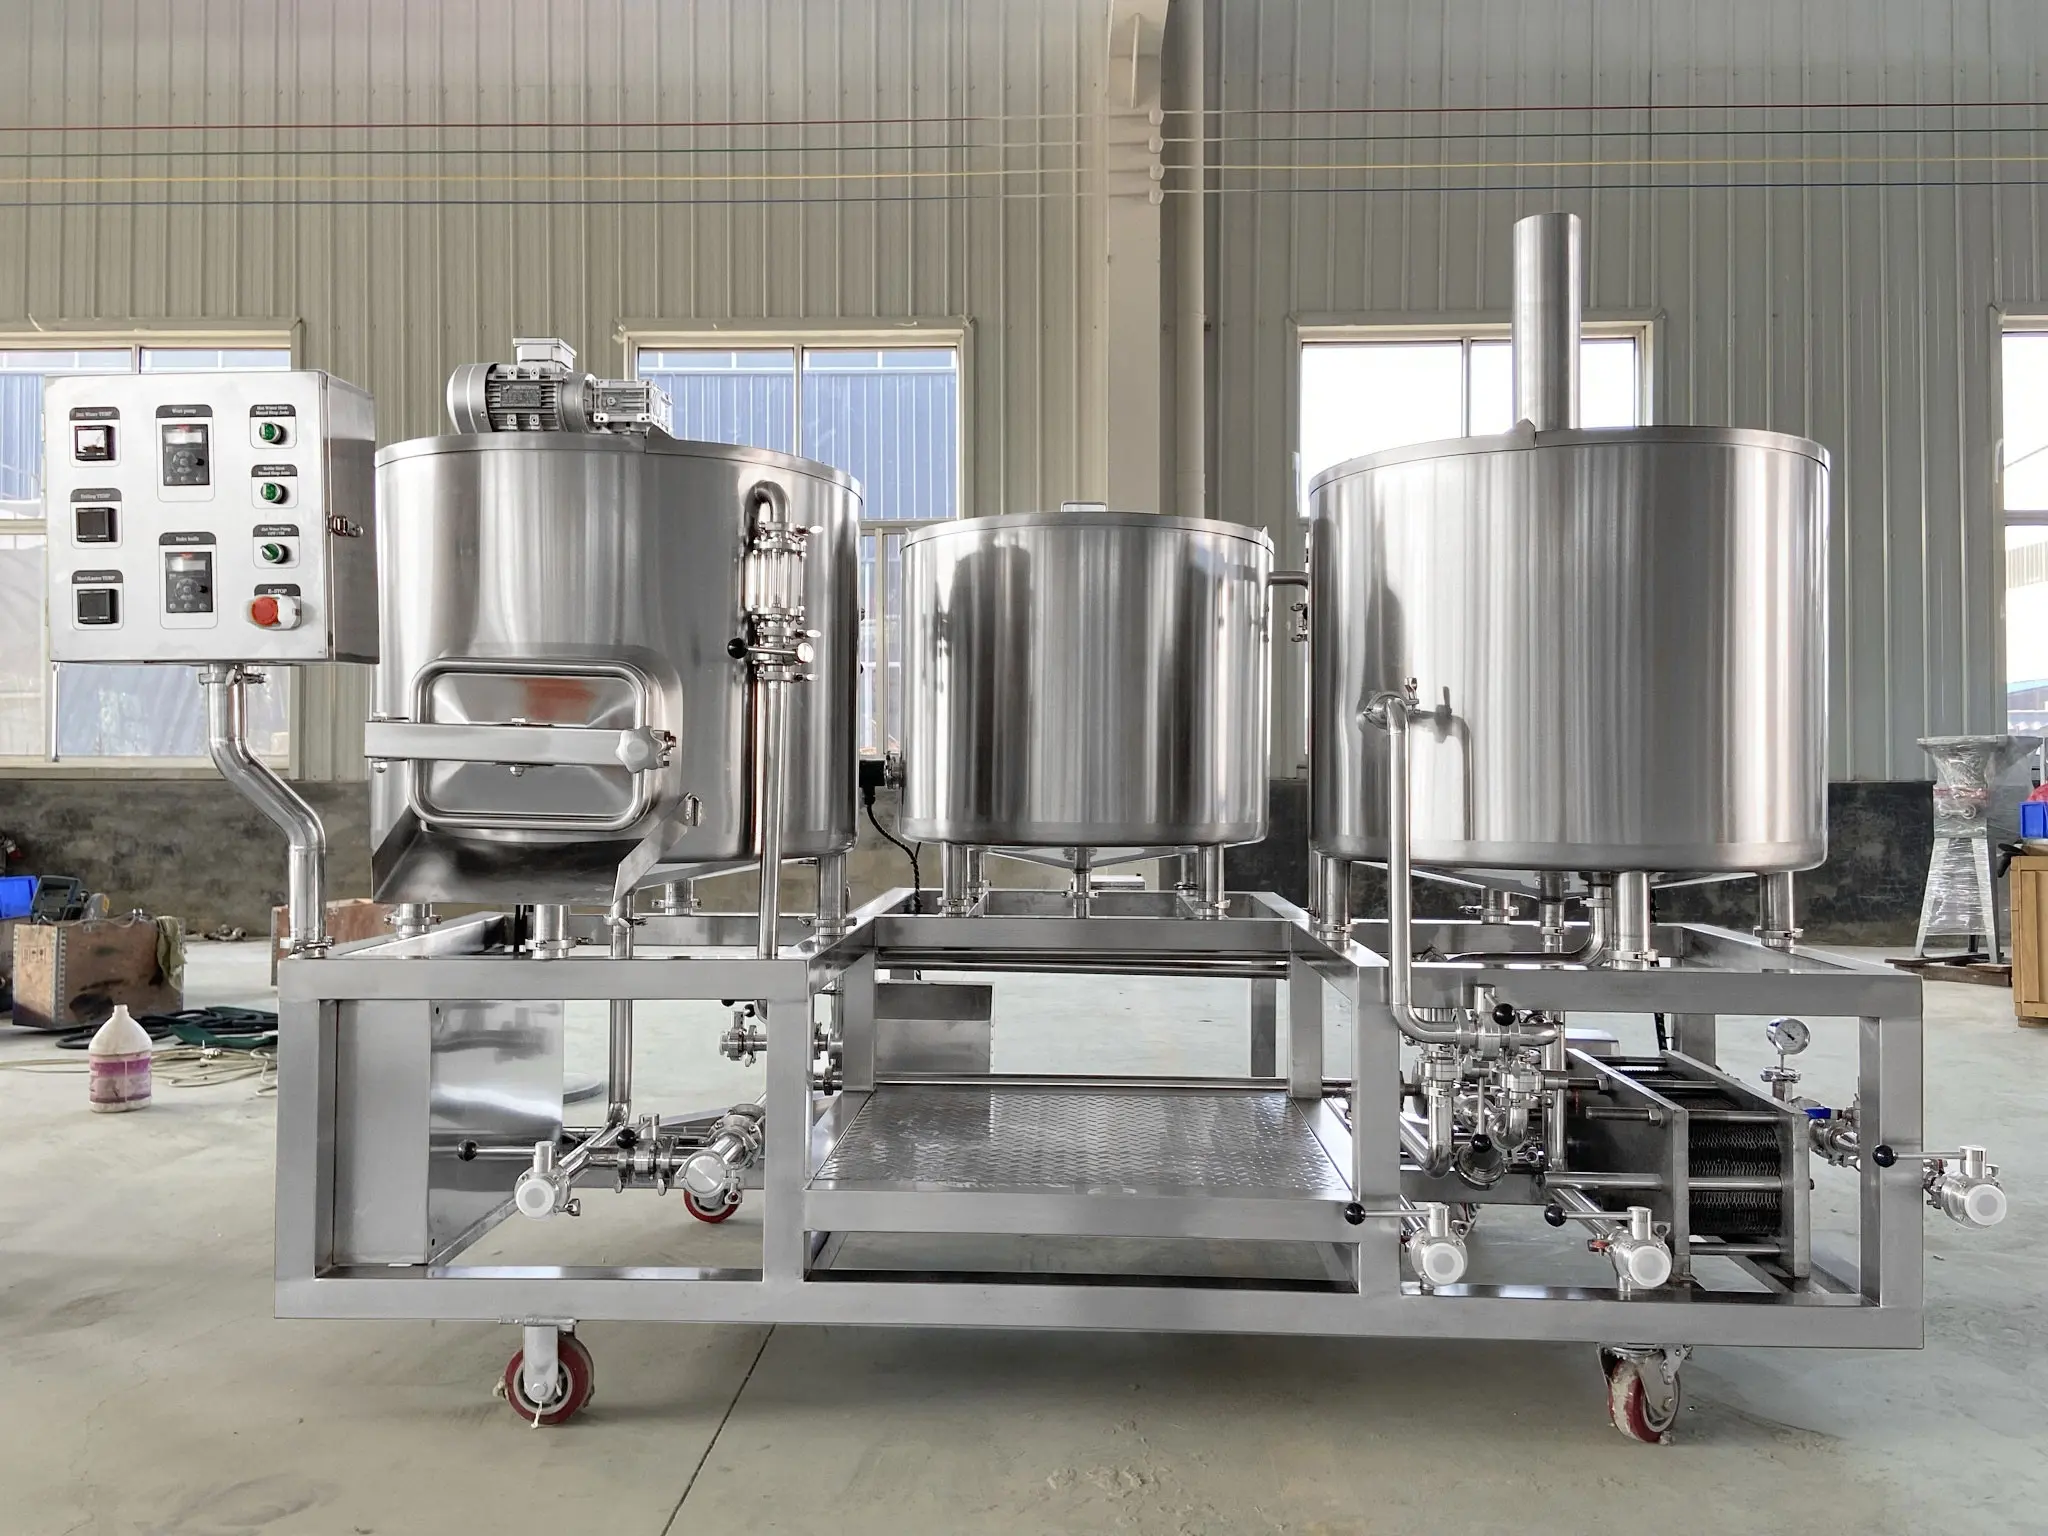 Alta calidad 200L 300L 400L 500L máquina de elaboración de cerveza micro equipo de cervecería/proveedor Beer Pilot Brewing System Nano Brewery